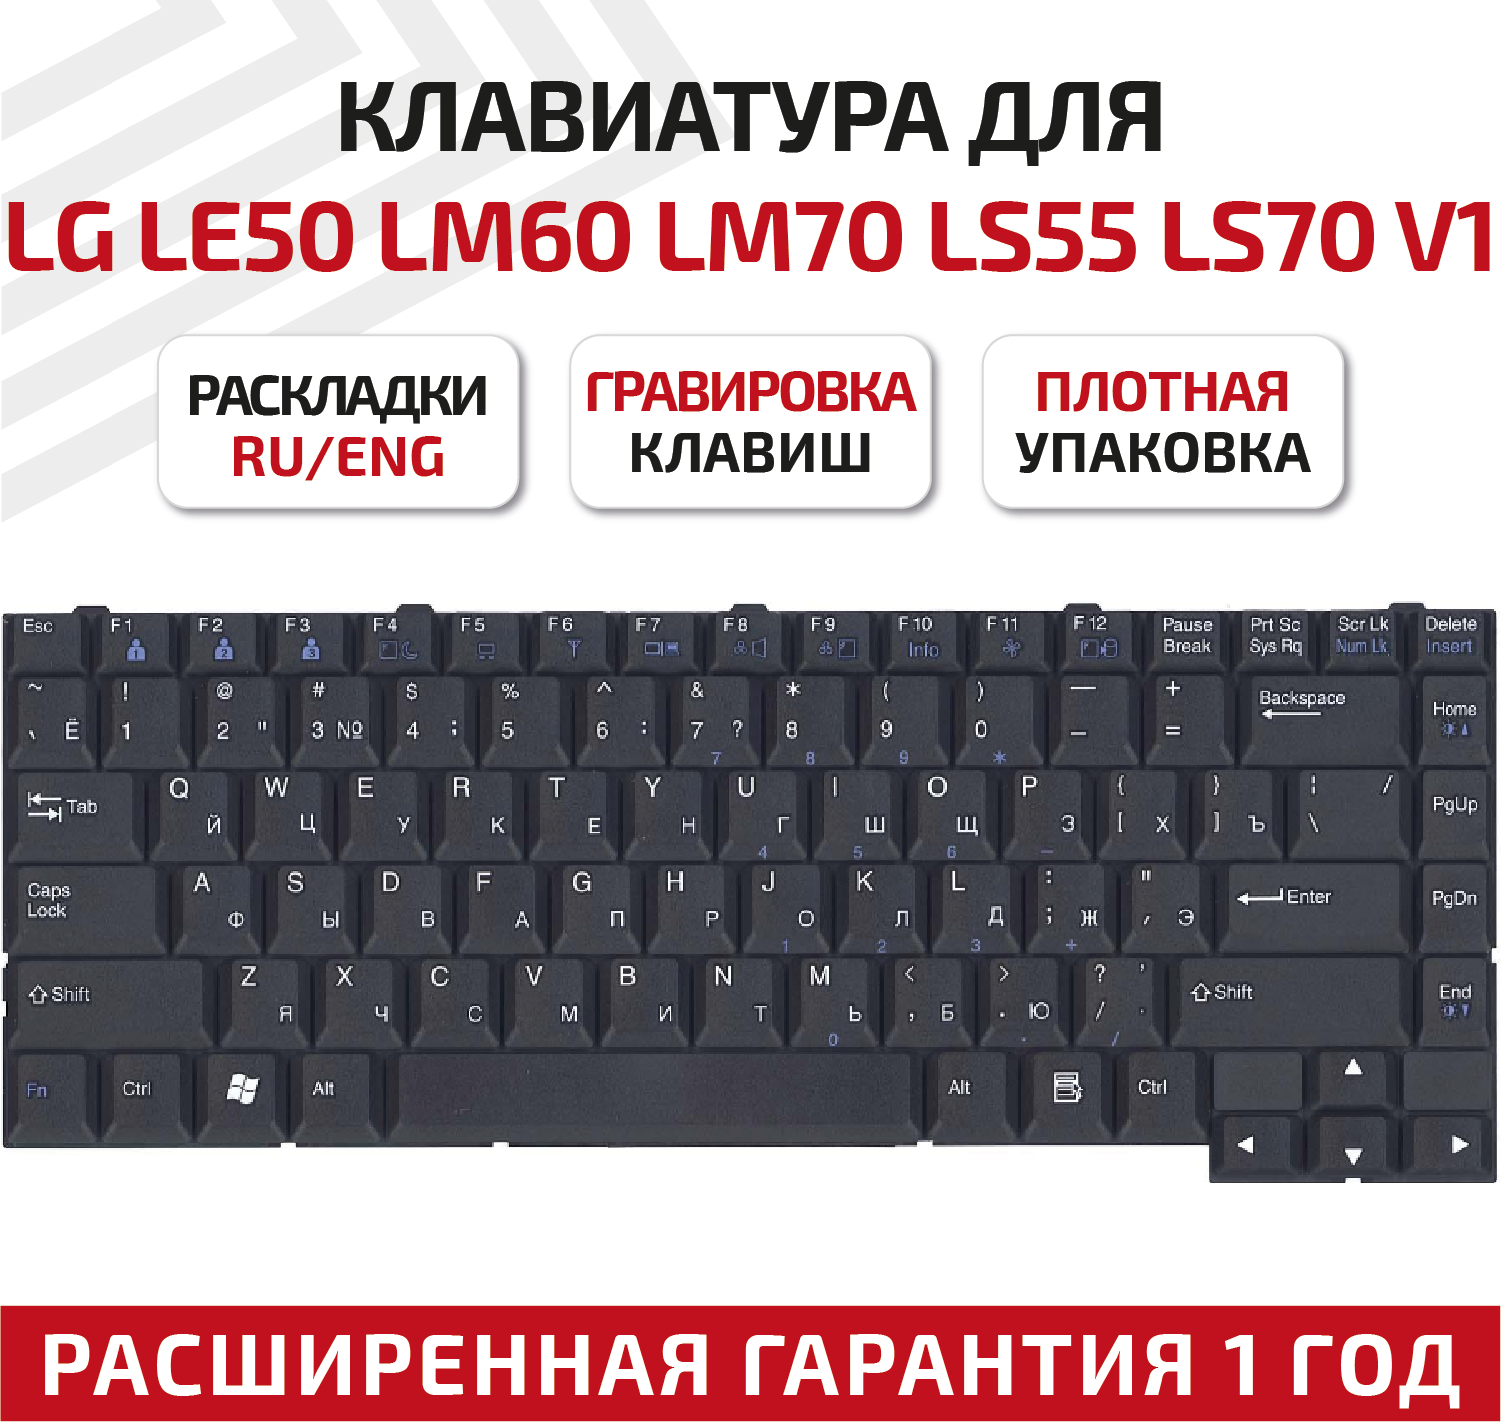 Клавиатура (keyboard) HMB411EC для ноутбука LG LE50, LM60, LM70, LS55, LS70 V1, черная